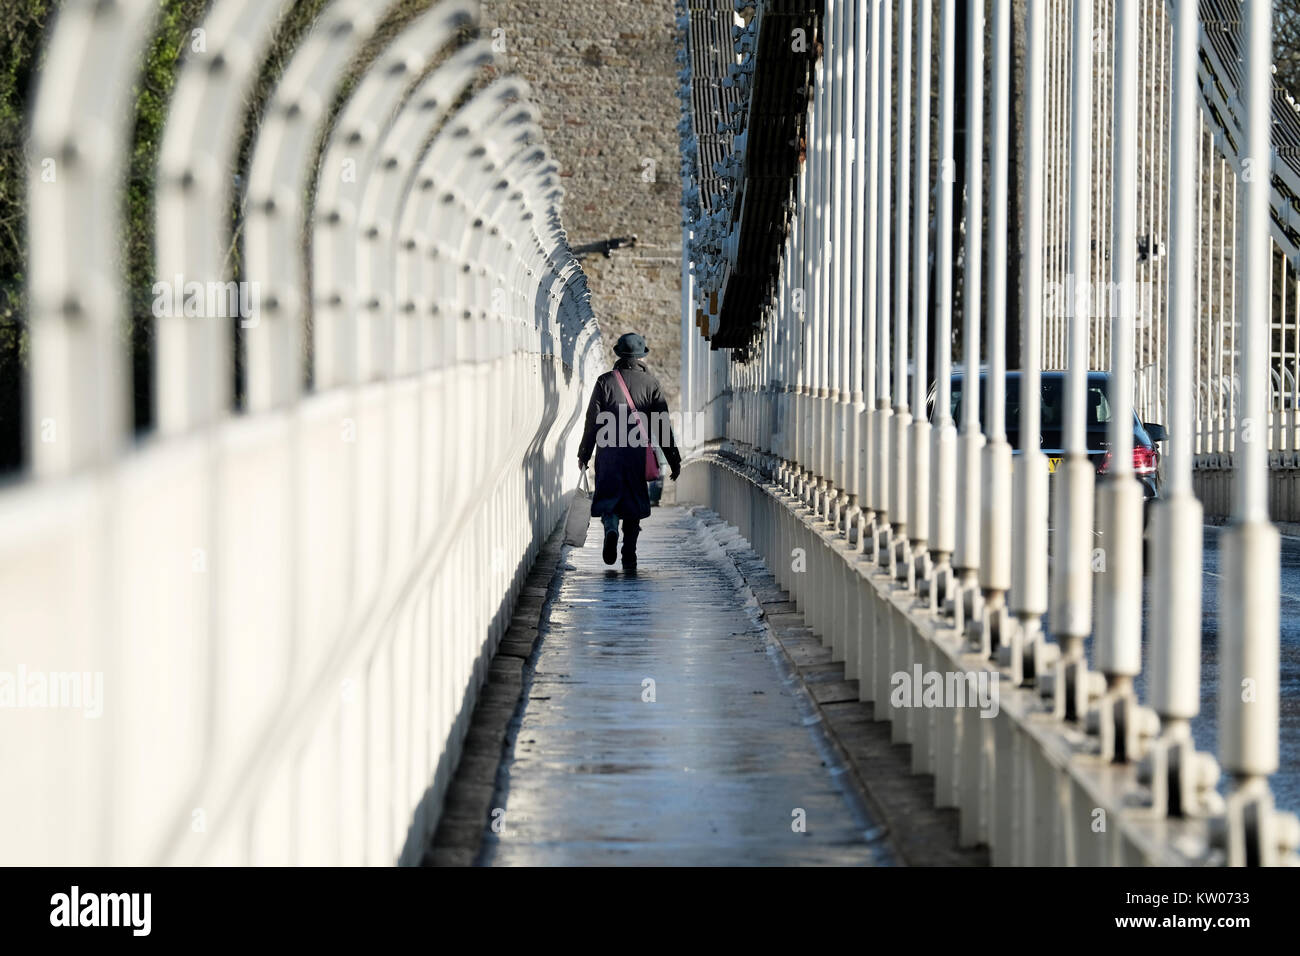 Eine Frau, die eine große Tasche, die über die Clifton Suspension Bridge in Bristol, UK. Ein kalter Wintertag und es gibt Eis und Schnee auf dem Gehweg. Stockfoto